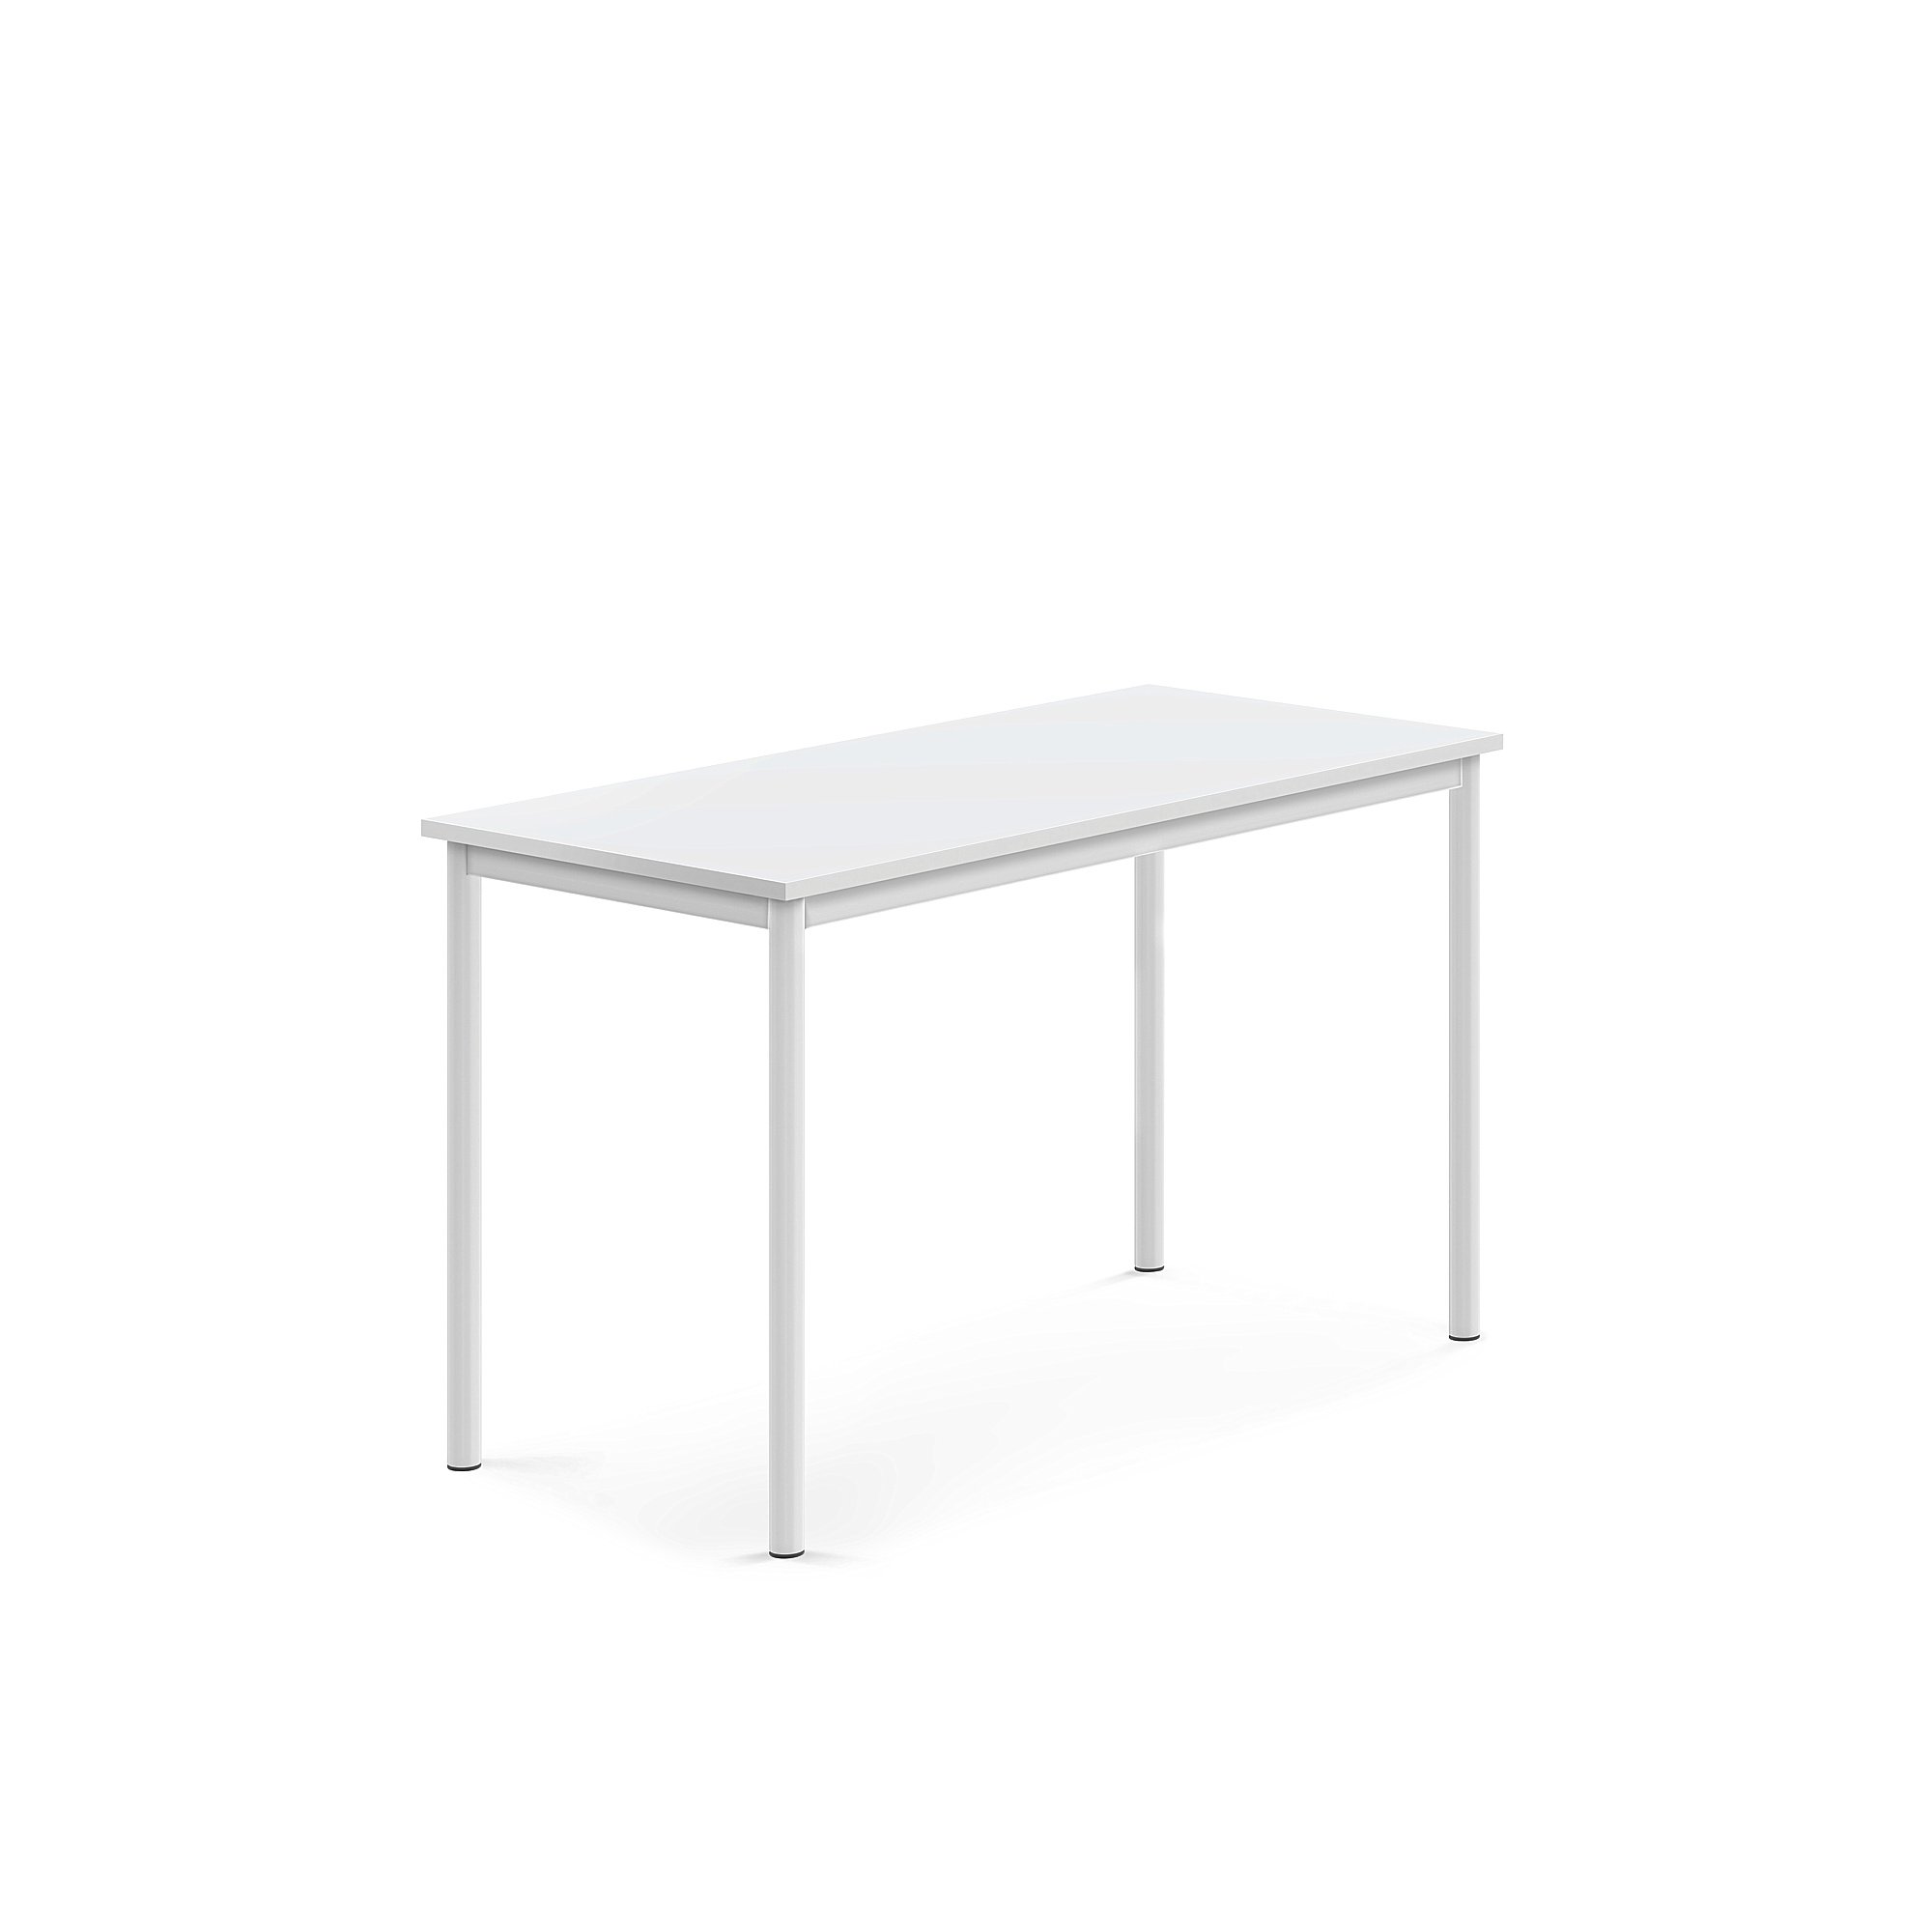 Stůl BORÅS, 1200x600x720 mm, bílé nohy, HPL deska, bílá